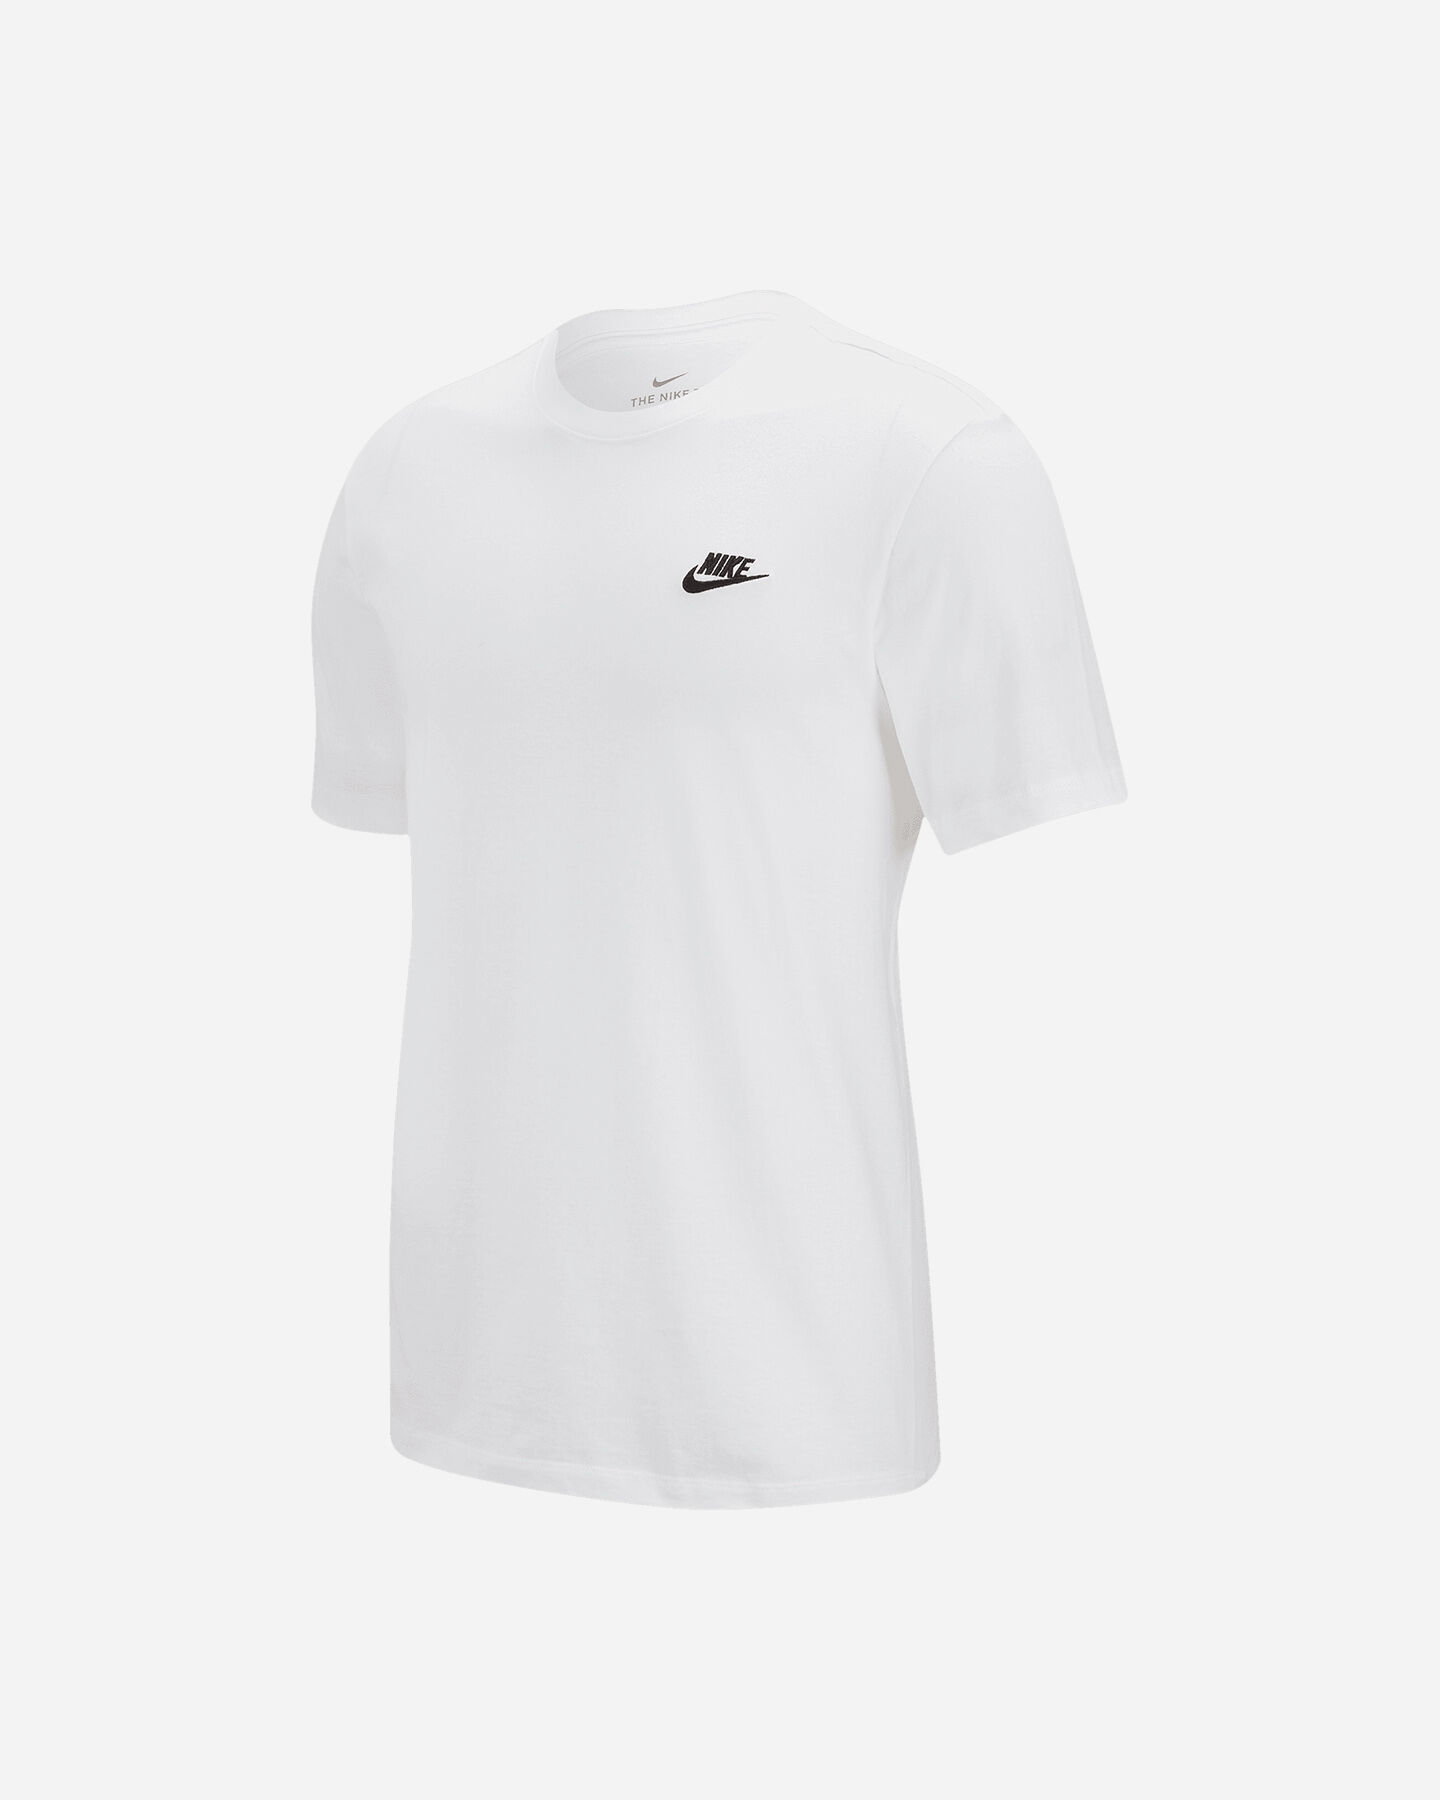  T-Shirt NIKE CLUB SMALL LOGO M S2023464|101|XL scatto 0